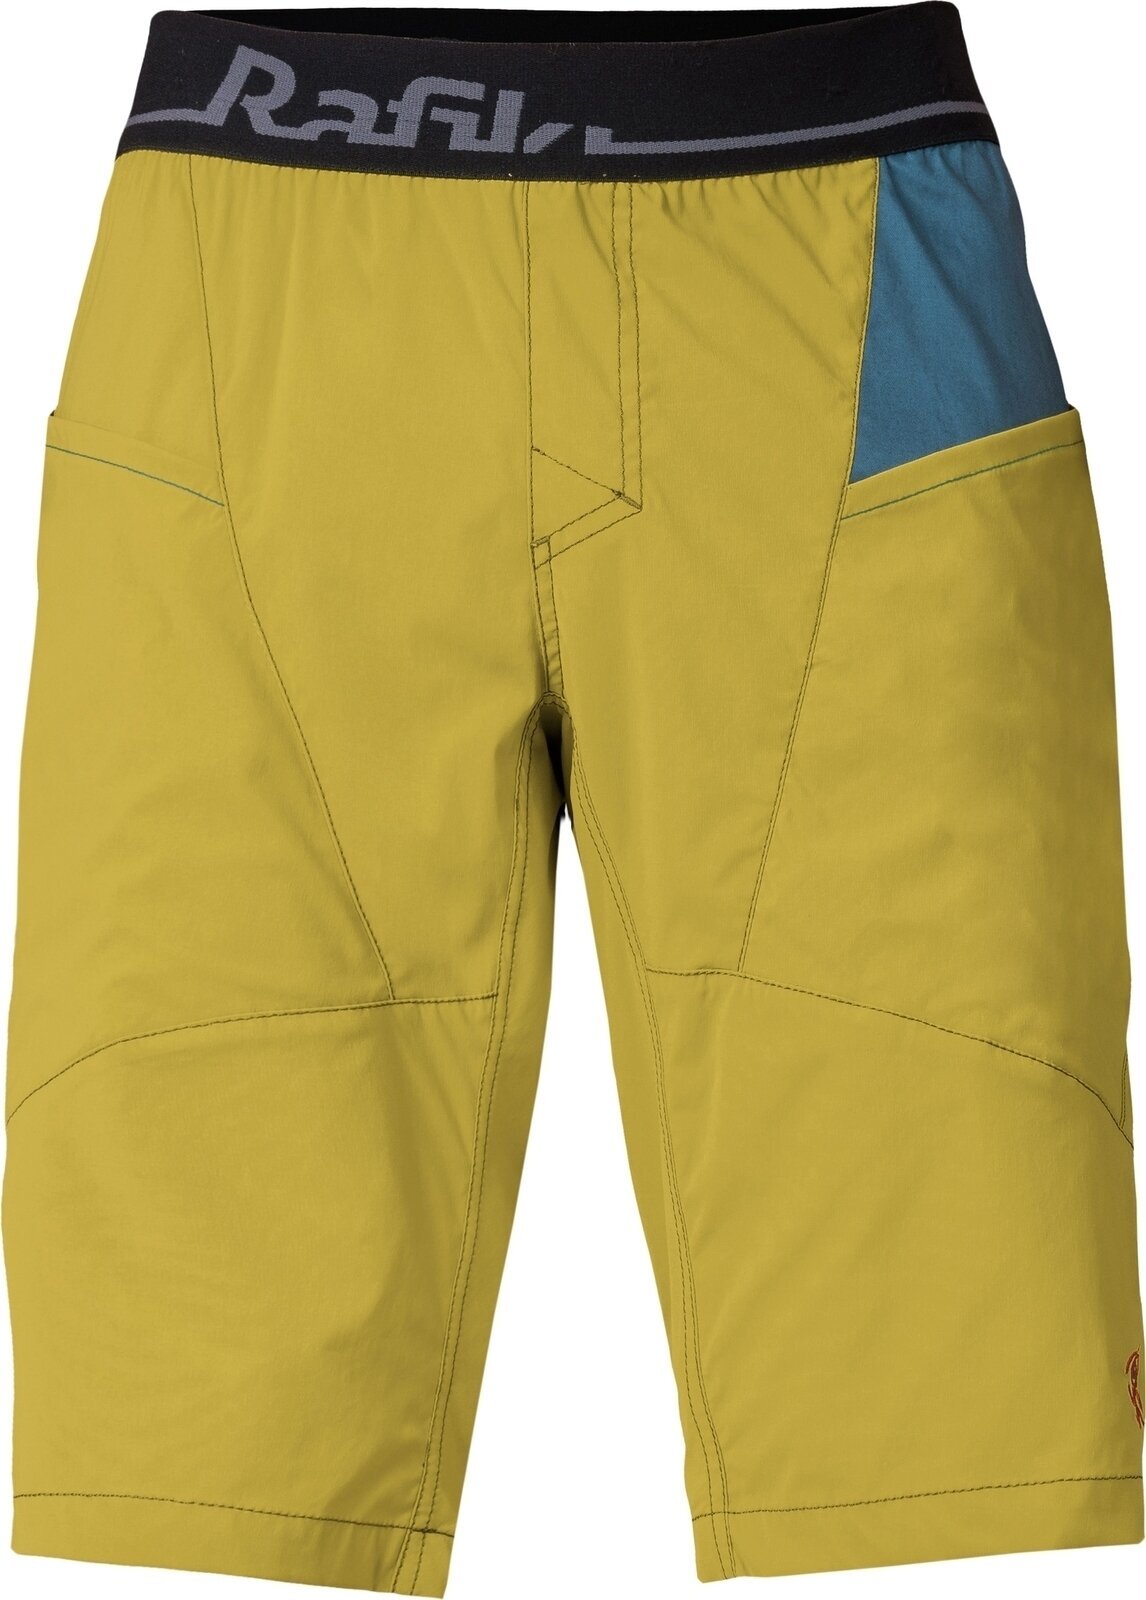 Pantaloni scurti Rafiki Megos Man Shorts Cress Green/Stargazer XL Pantaloni scurti